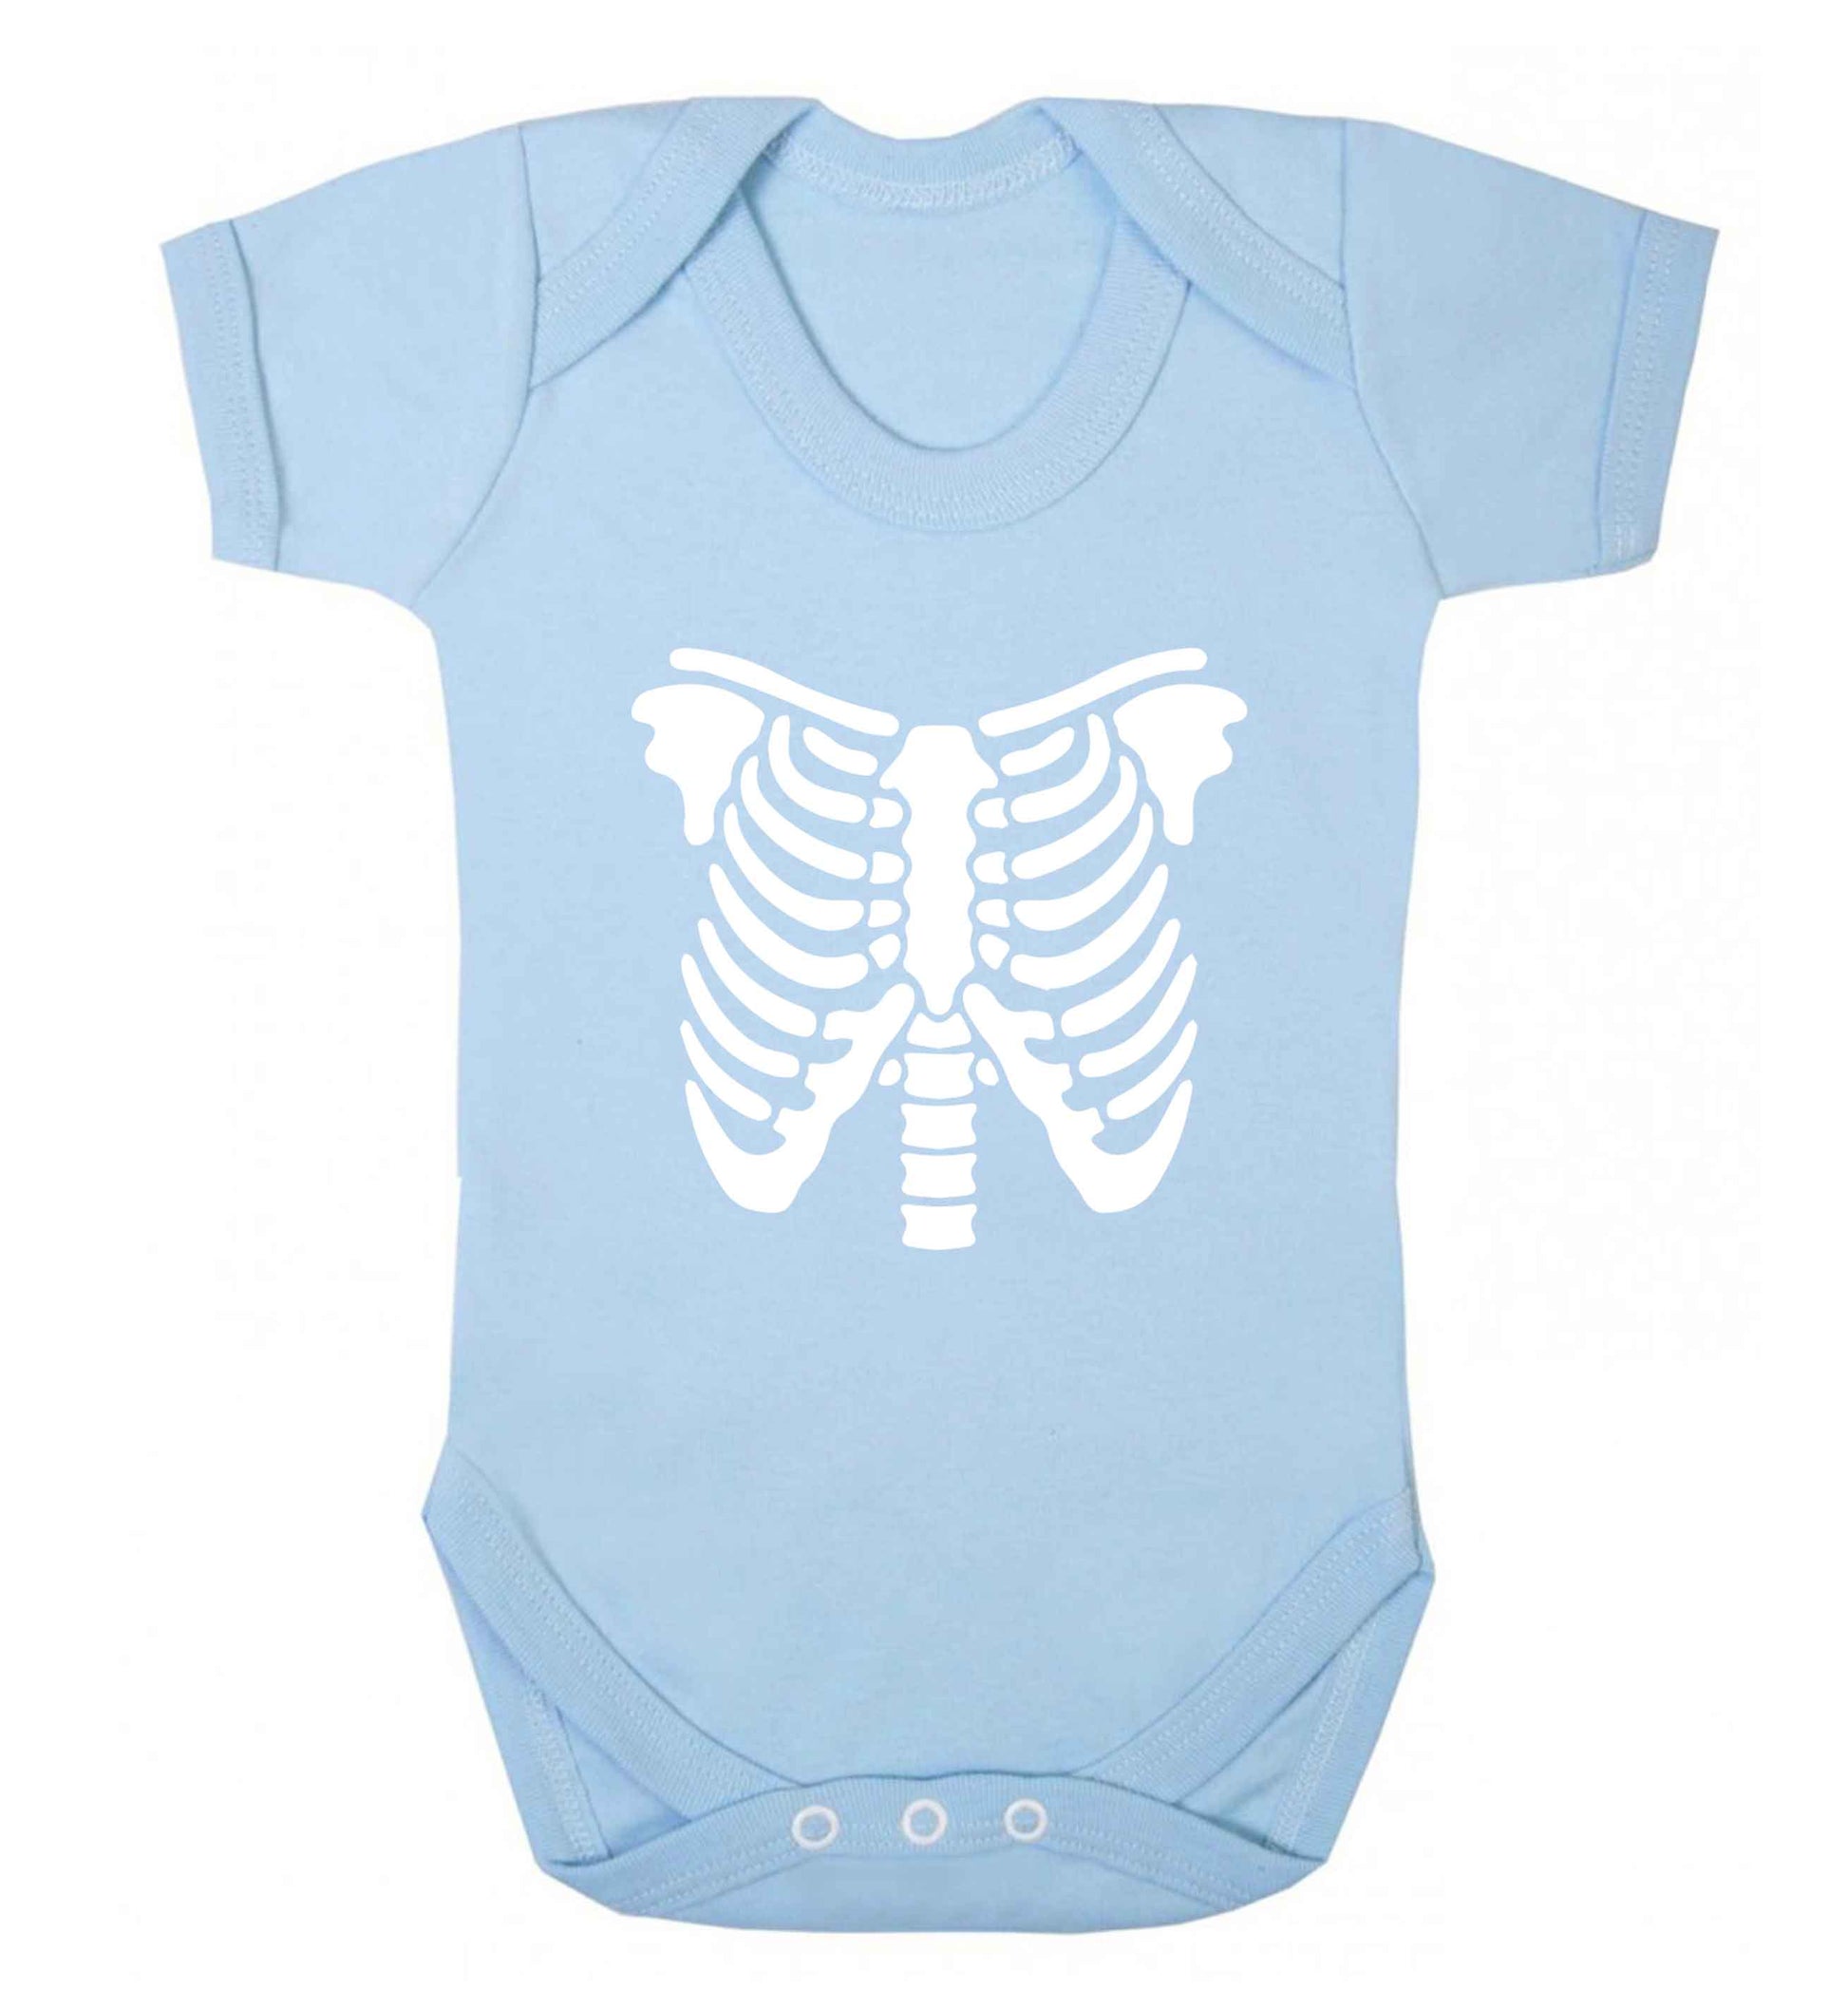 Skeleton ribcage baby vest pale blue 18-24 months